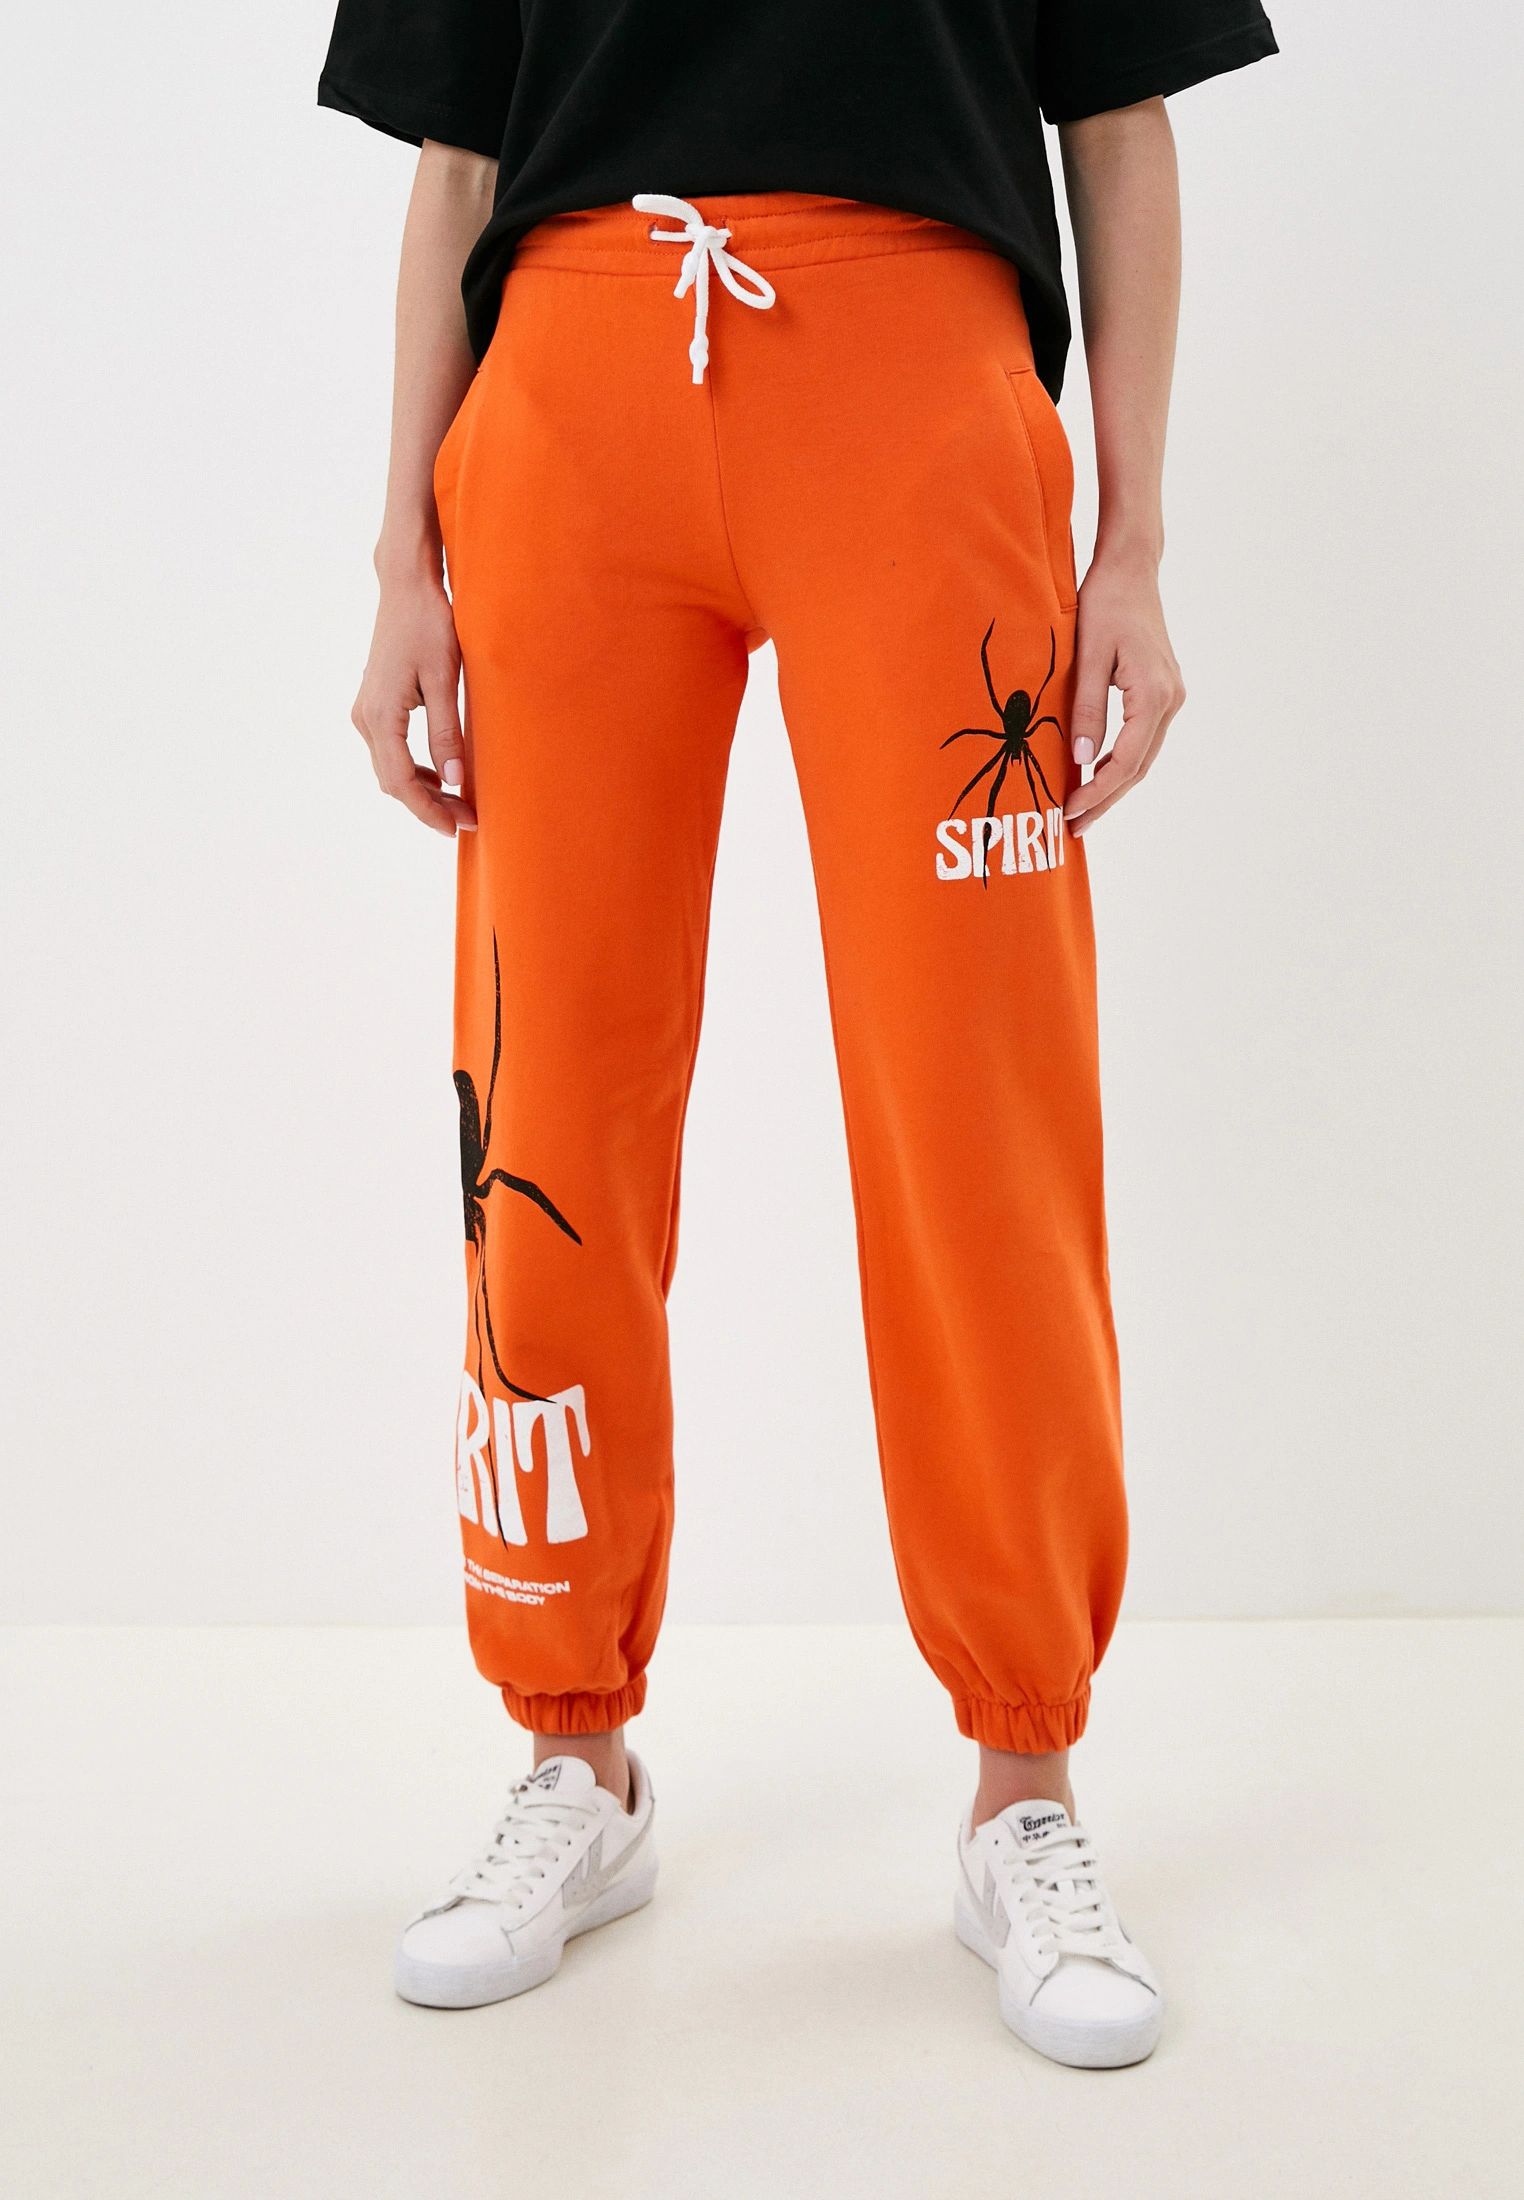 Спортивные брюки женские BLACKSI 5039 оранжевые S